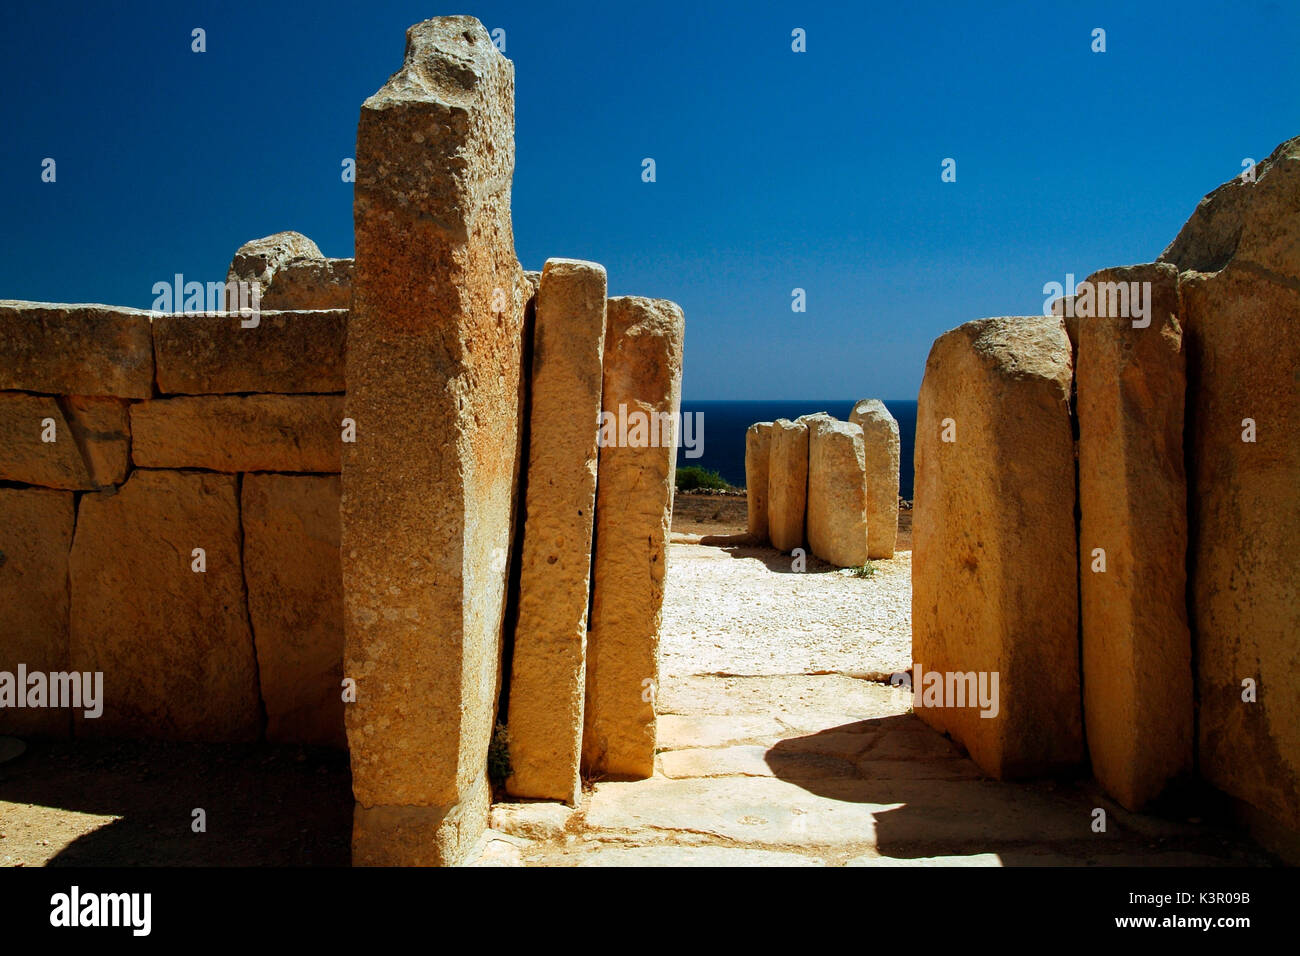 Hagar Qim ist eine Gruppe von megalithischen t unter den ältesten religiösen Stätten auf der Erde, durch das Welterbe Komitee als einzigartige architektonische Meisterwerke Malta Europa beschrieben. Stockfoto